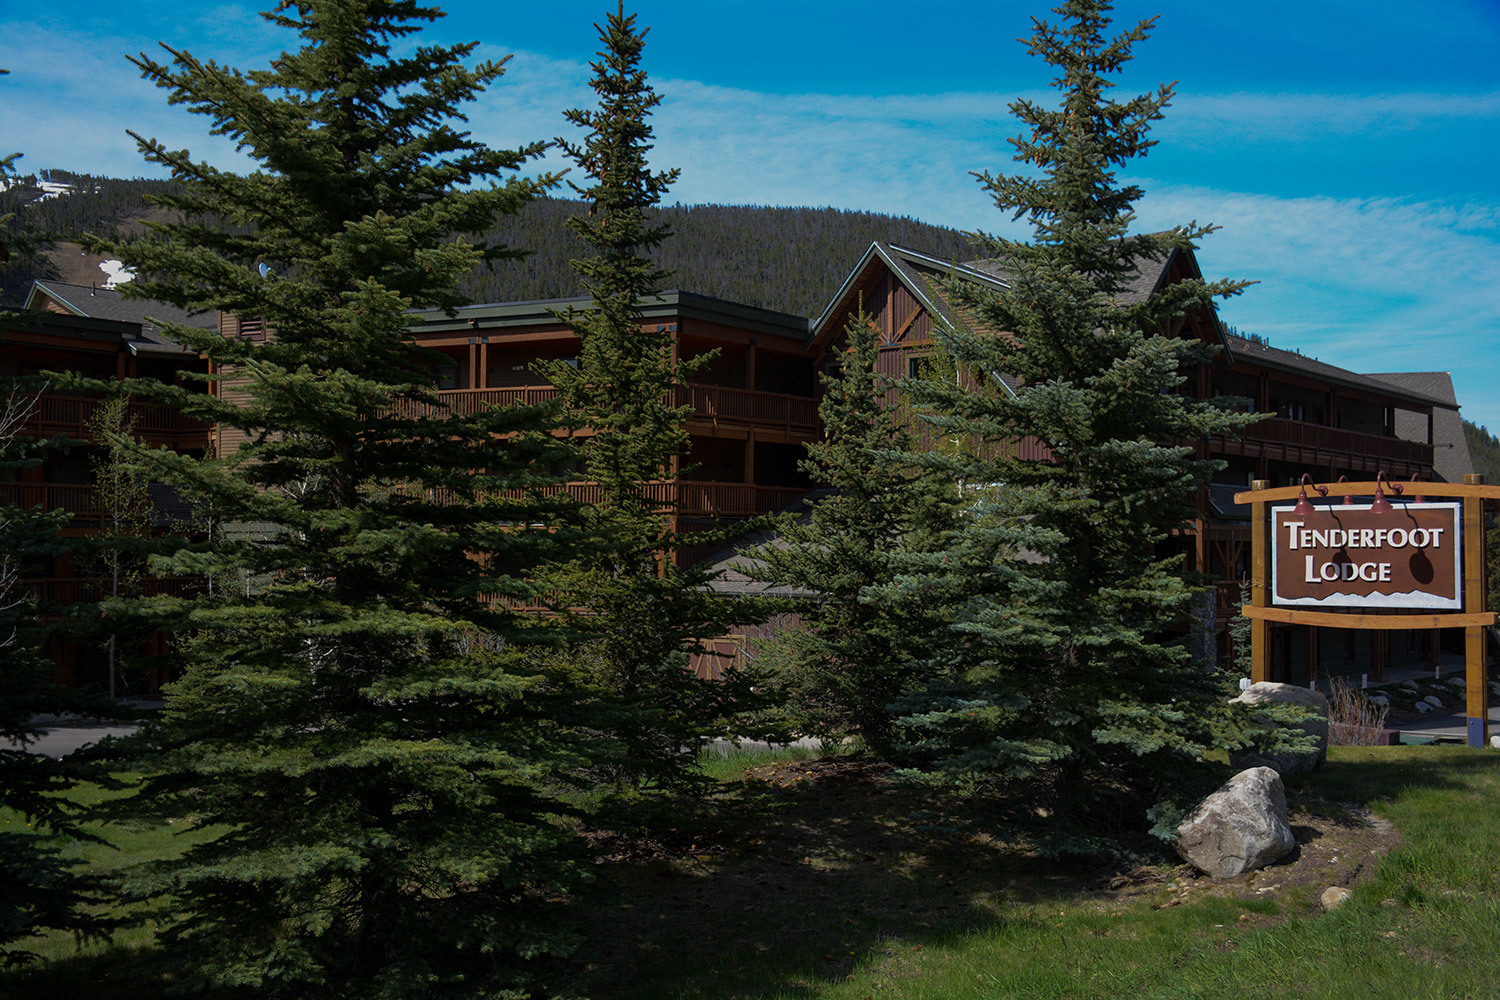 Tenderfoot Lodge at Keystone Colorado